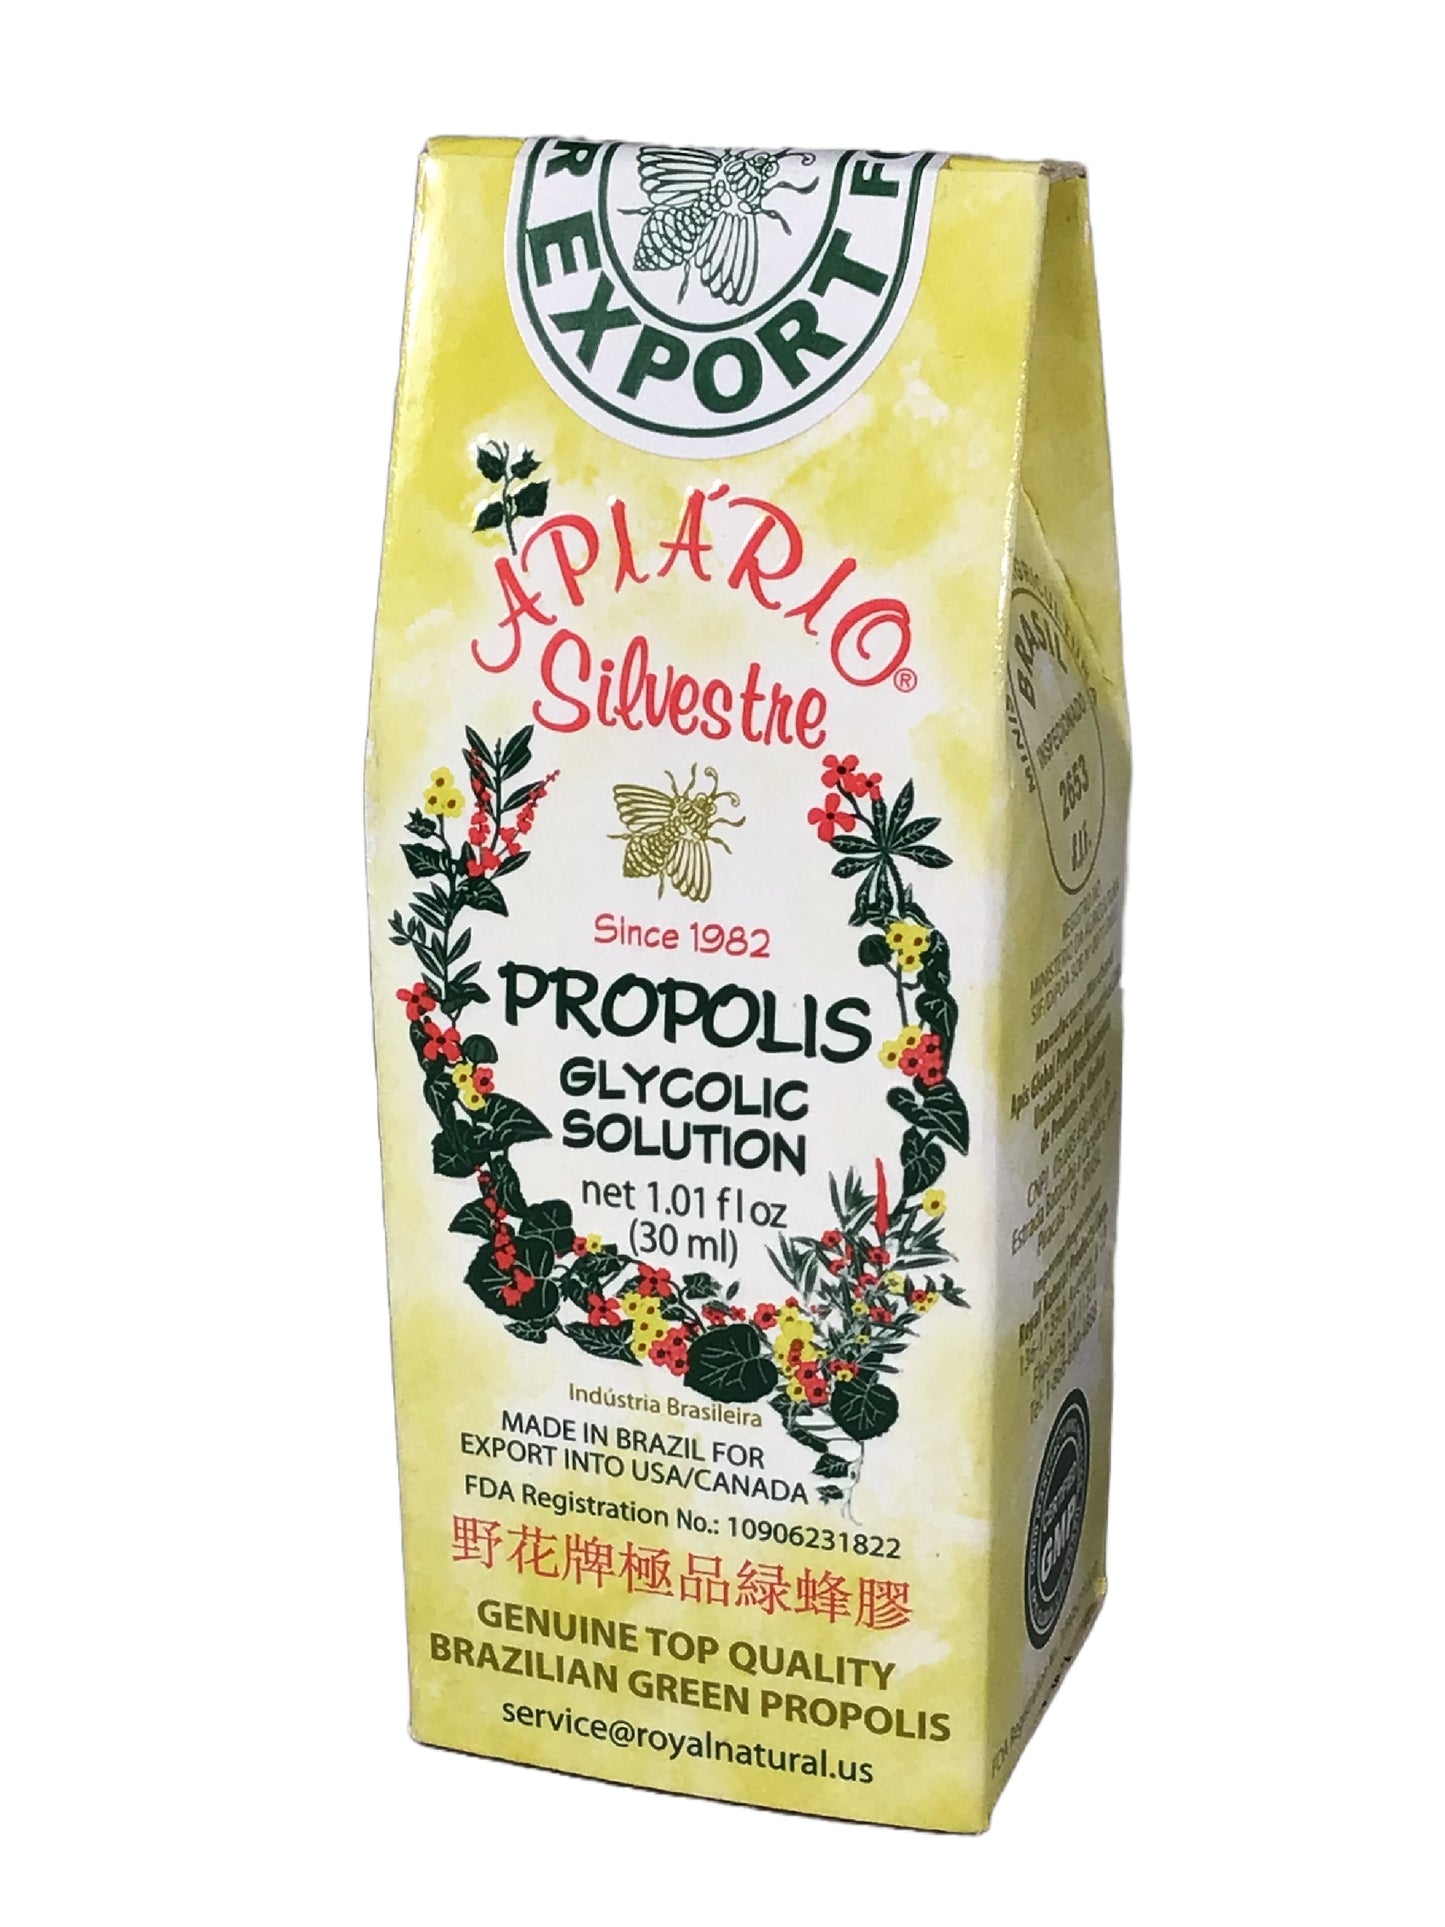 Apiario Silvestre Brazilian Propolis Glycolic Solution 野花牌极品绿蜂胶 1bottle/30ml